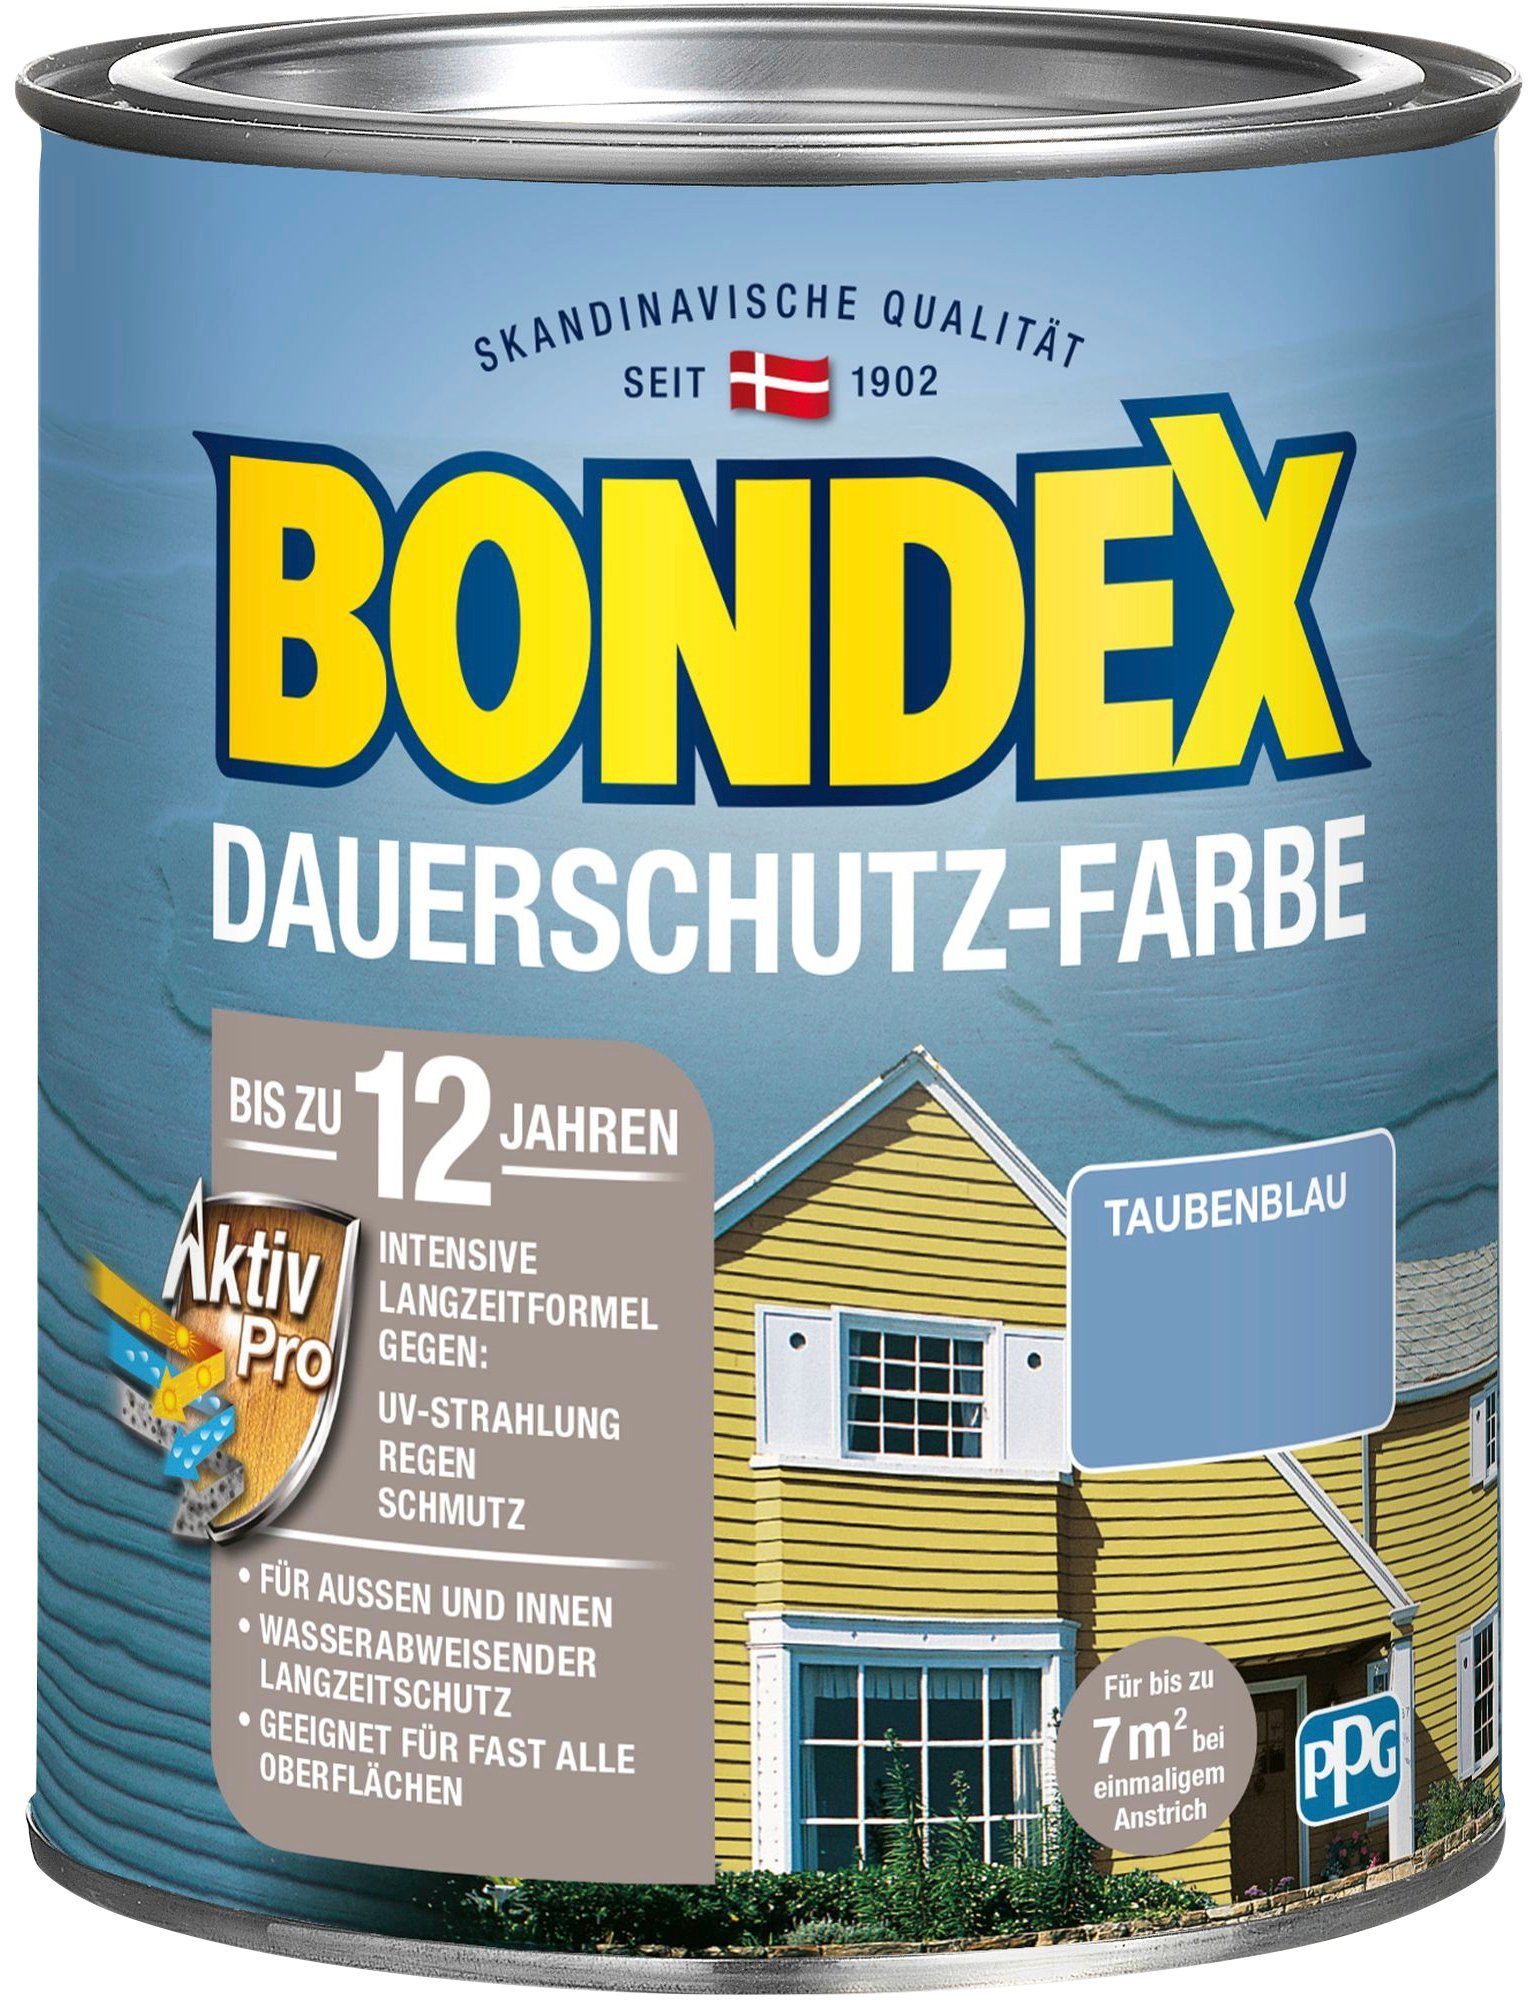 Bondex Wetterschutzfarbe DAUERSCHUTZ-FARBE, für Außen und Innen, Wetterschutz mit Aktiv Pro Langzeitformel Taubenblau